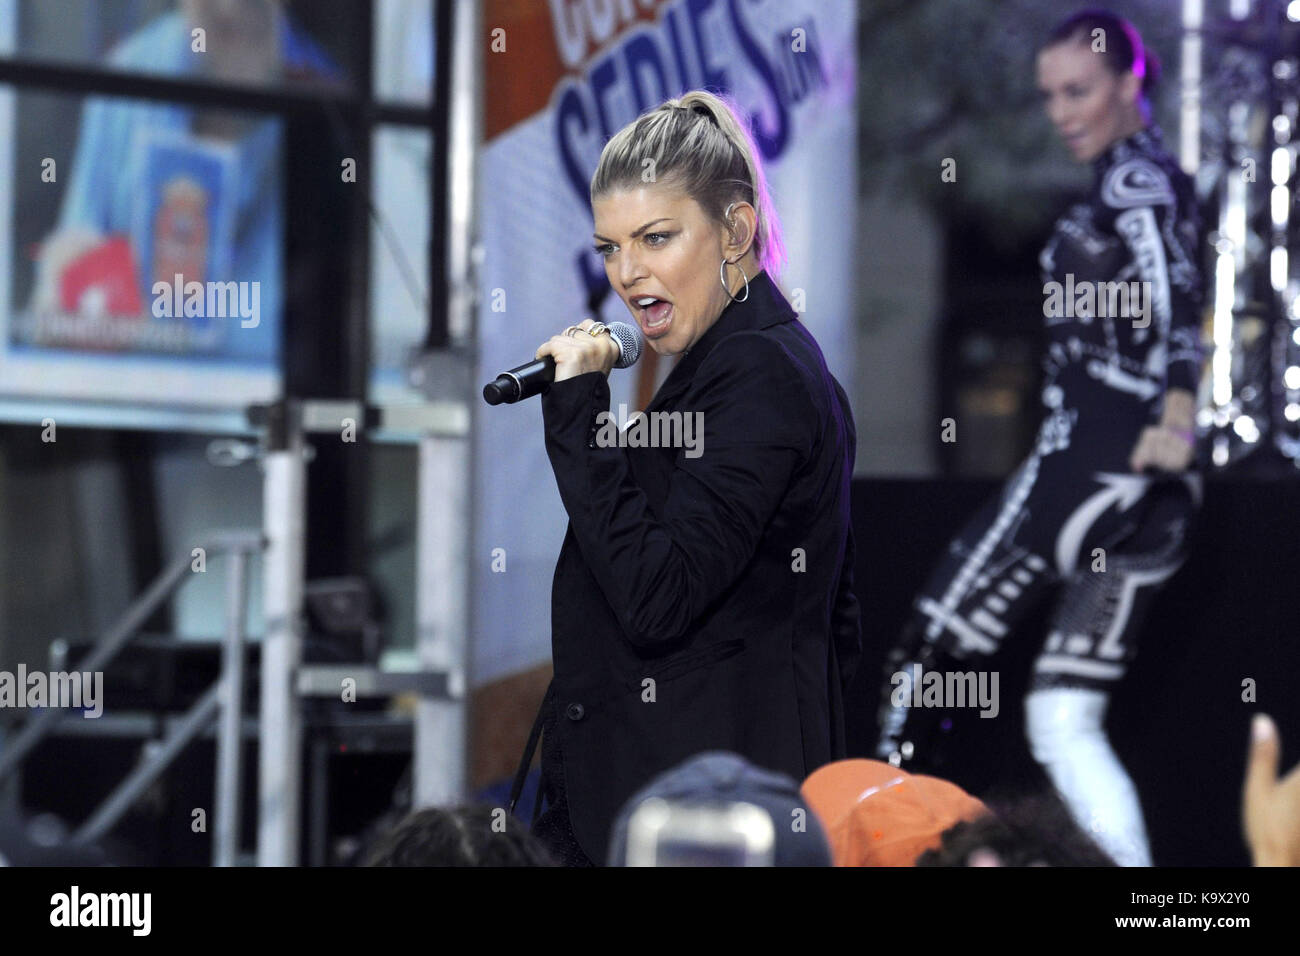 Fergie live auf der Bühne während der "NBC Today Show Citi Konzertreihe "am Rockefeller Plaza am 22. September 2017 in New York City. | Verwendung weltweit Stockfoto